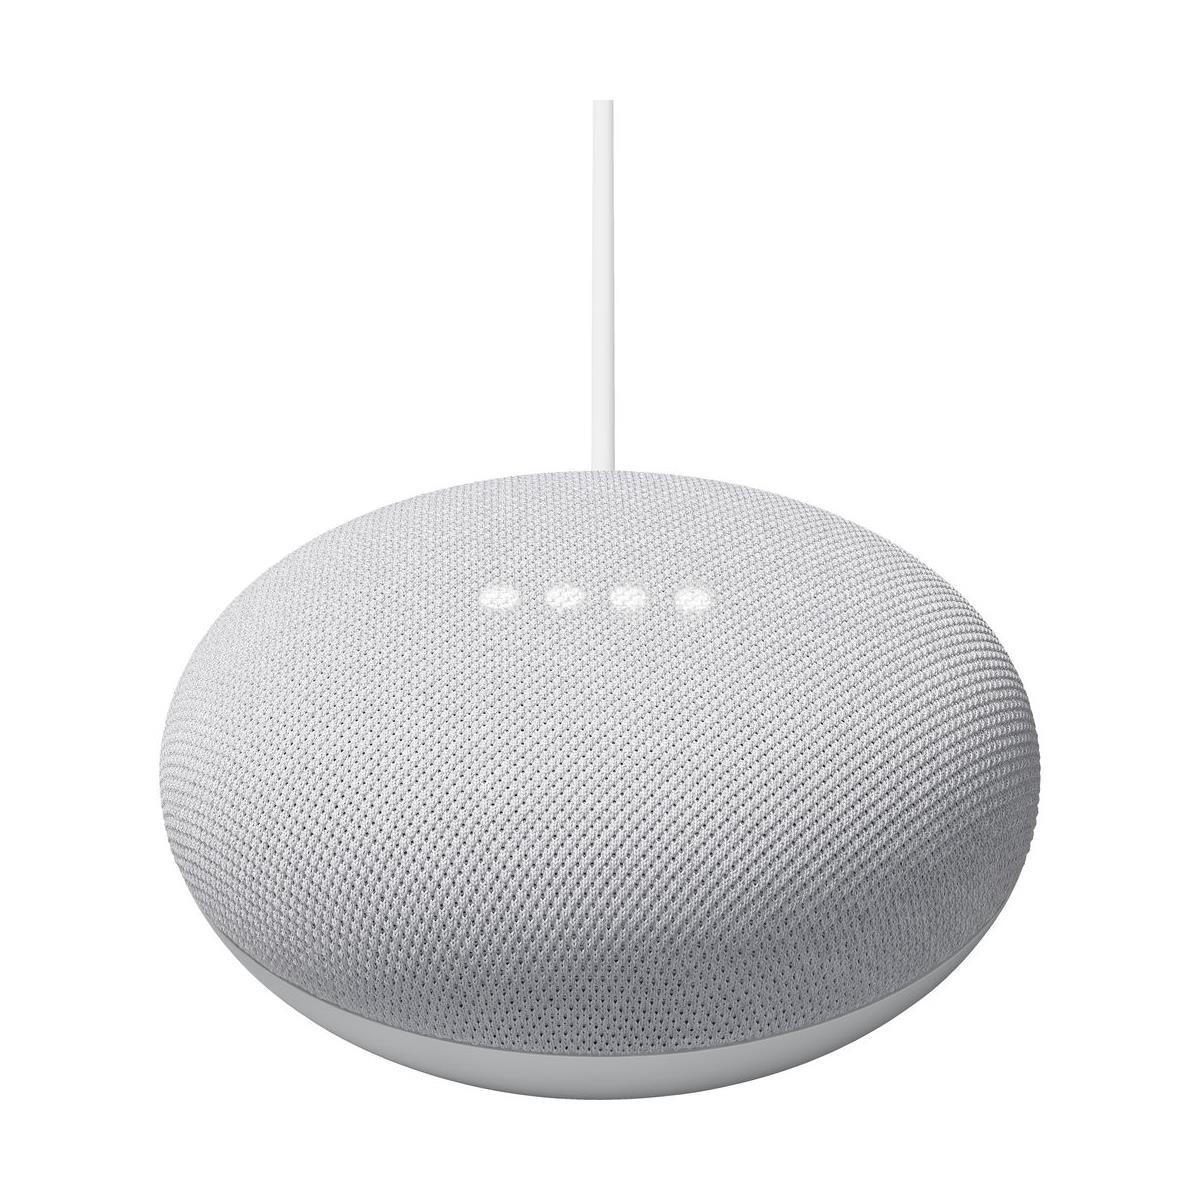 Google Nest Mini Speaker for $18.99 Shipped